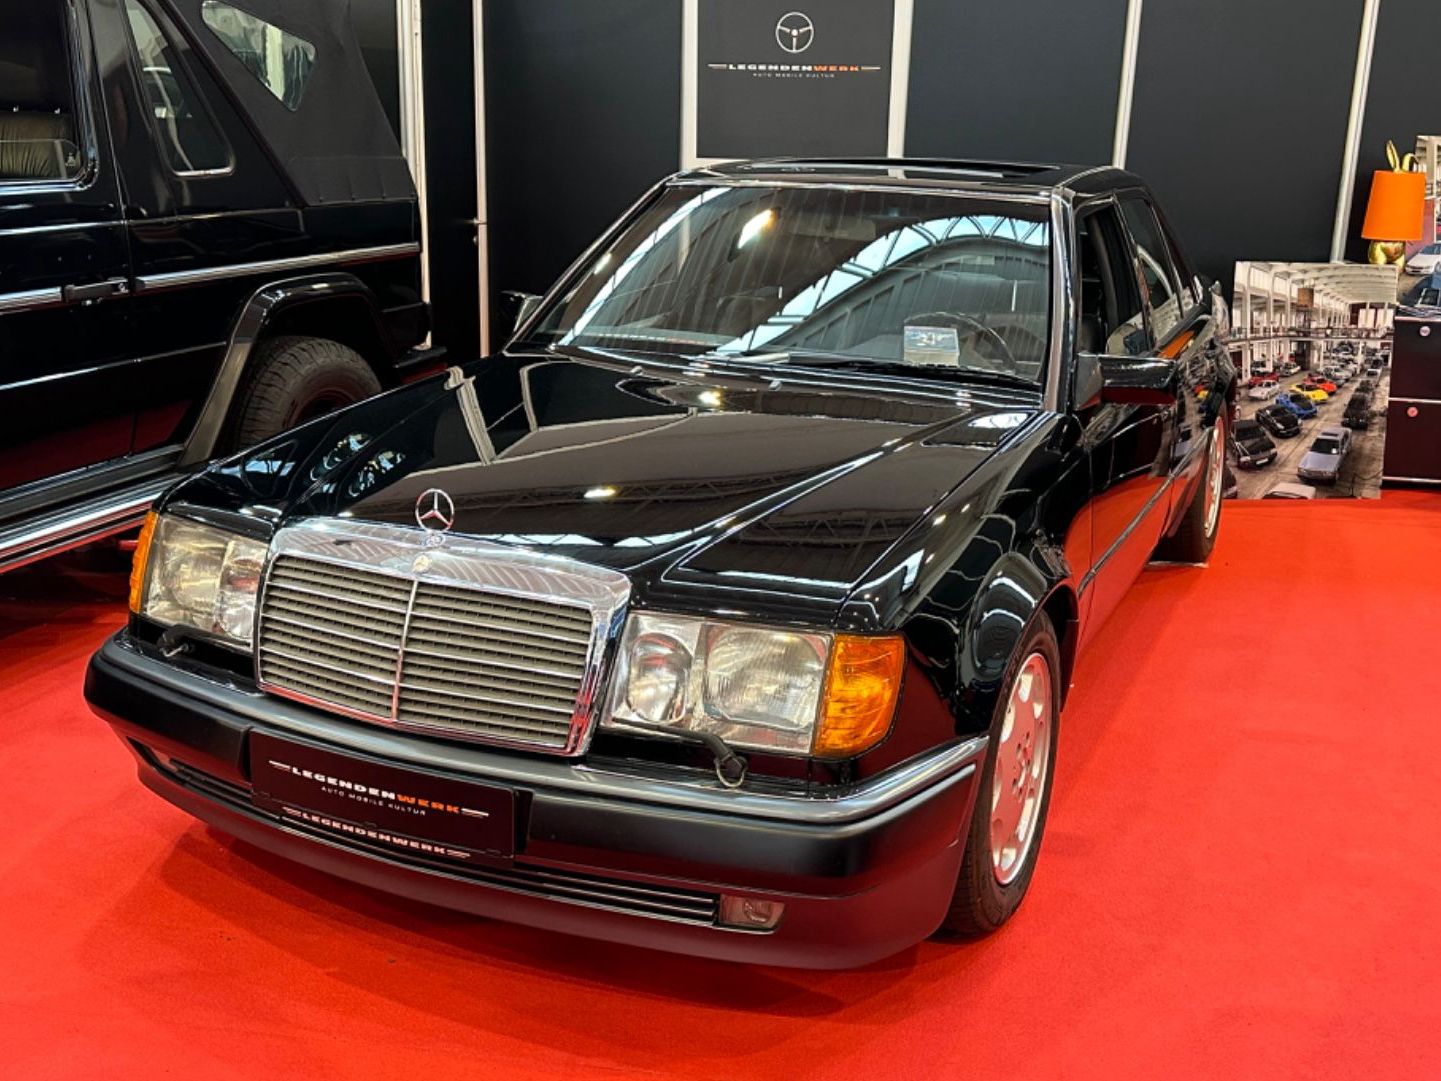 Mercedes-Benz 500 E W124 immer in D zugelassen TV-Prominenz